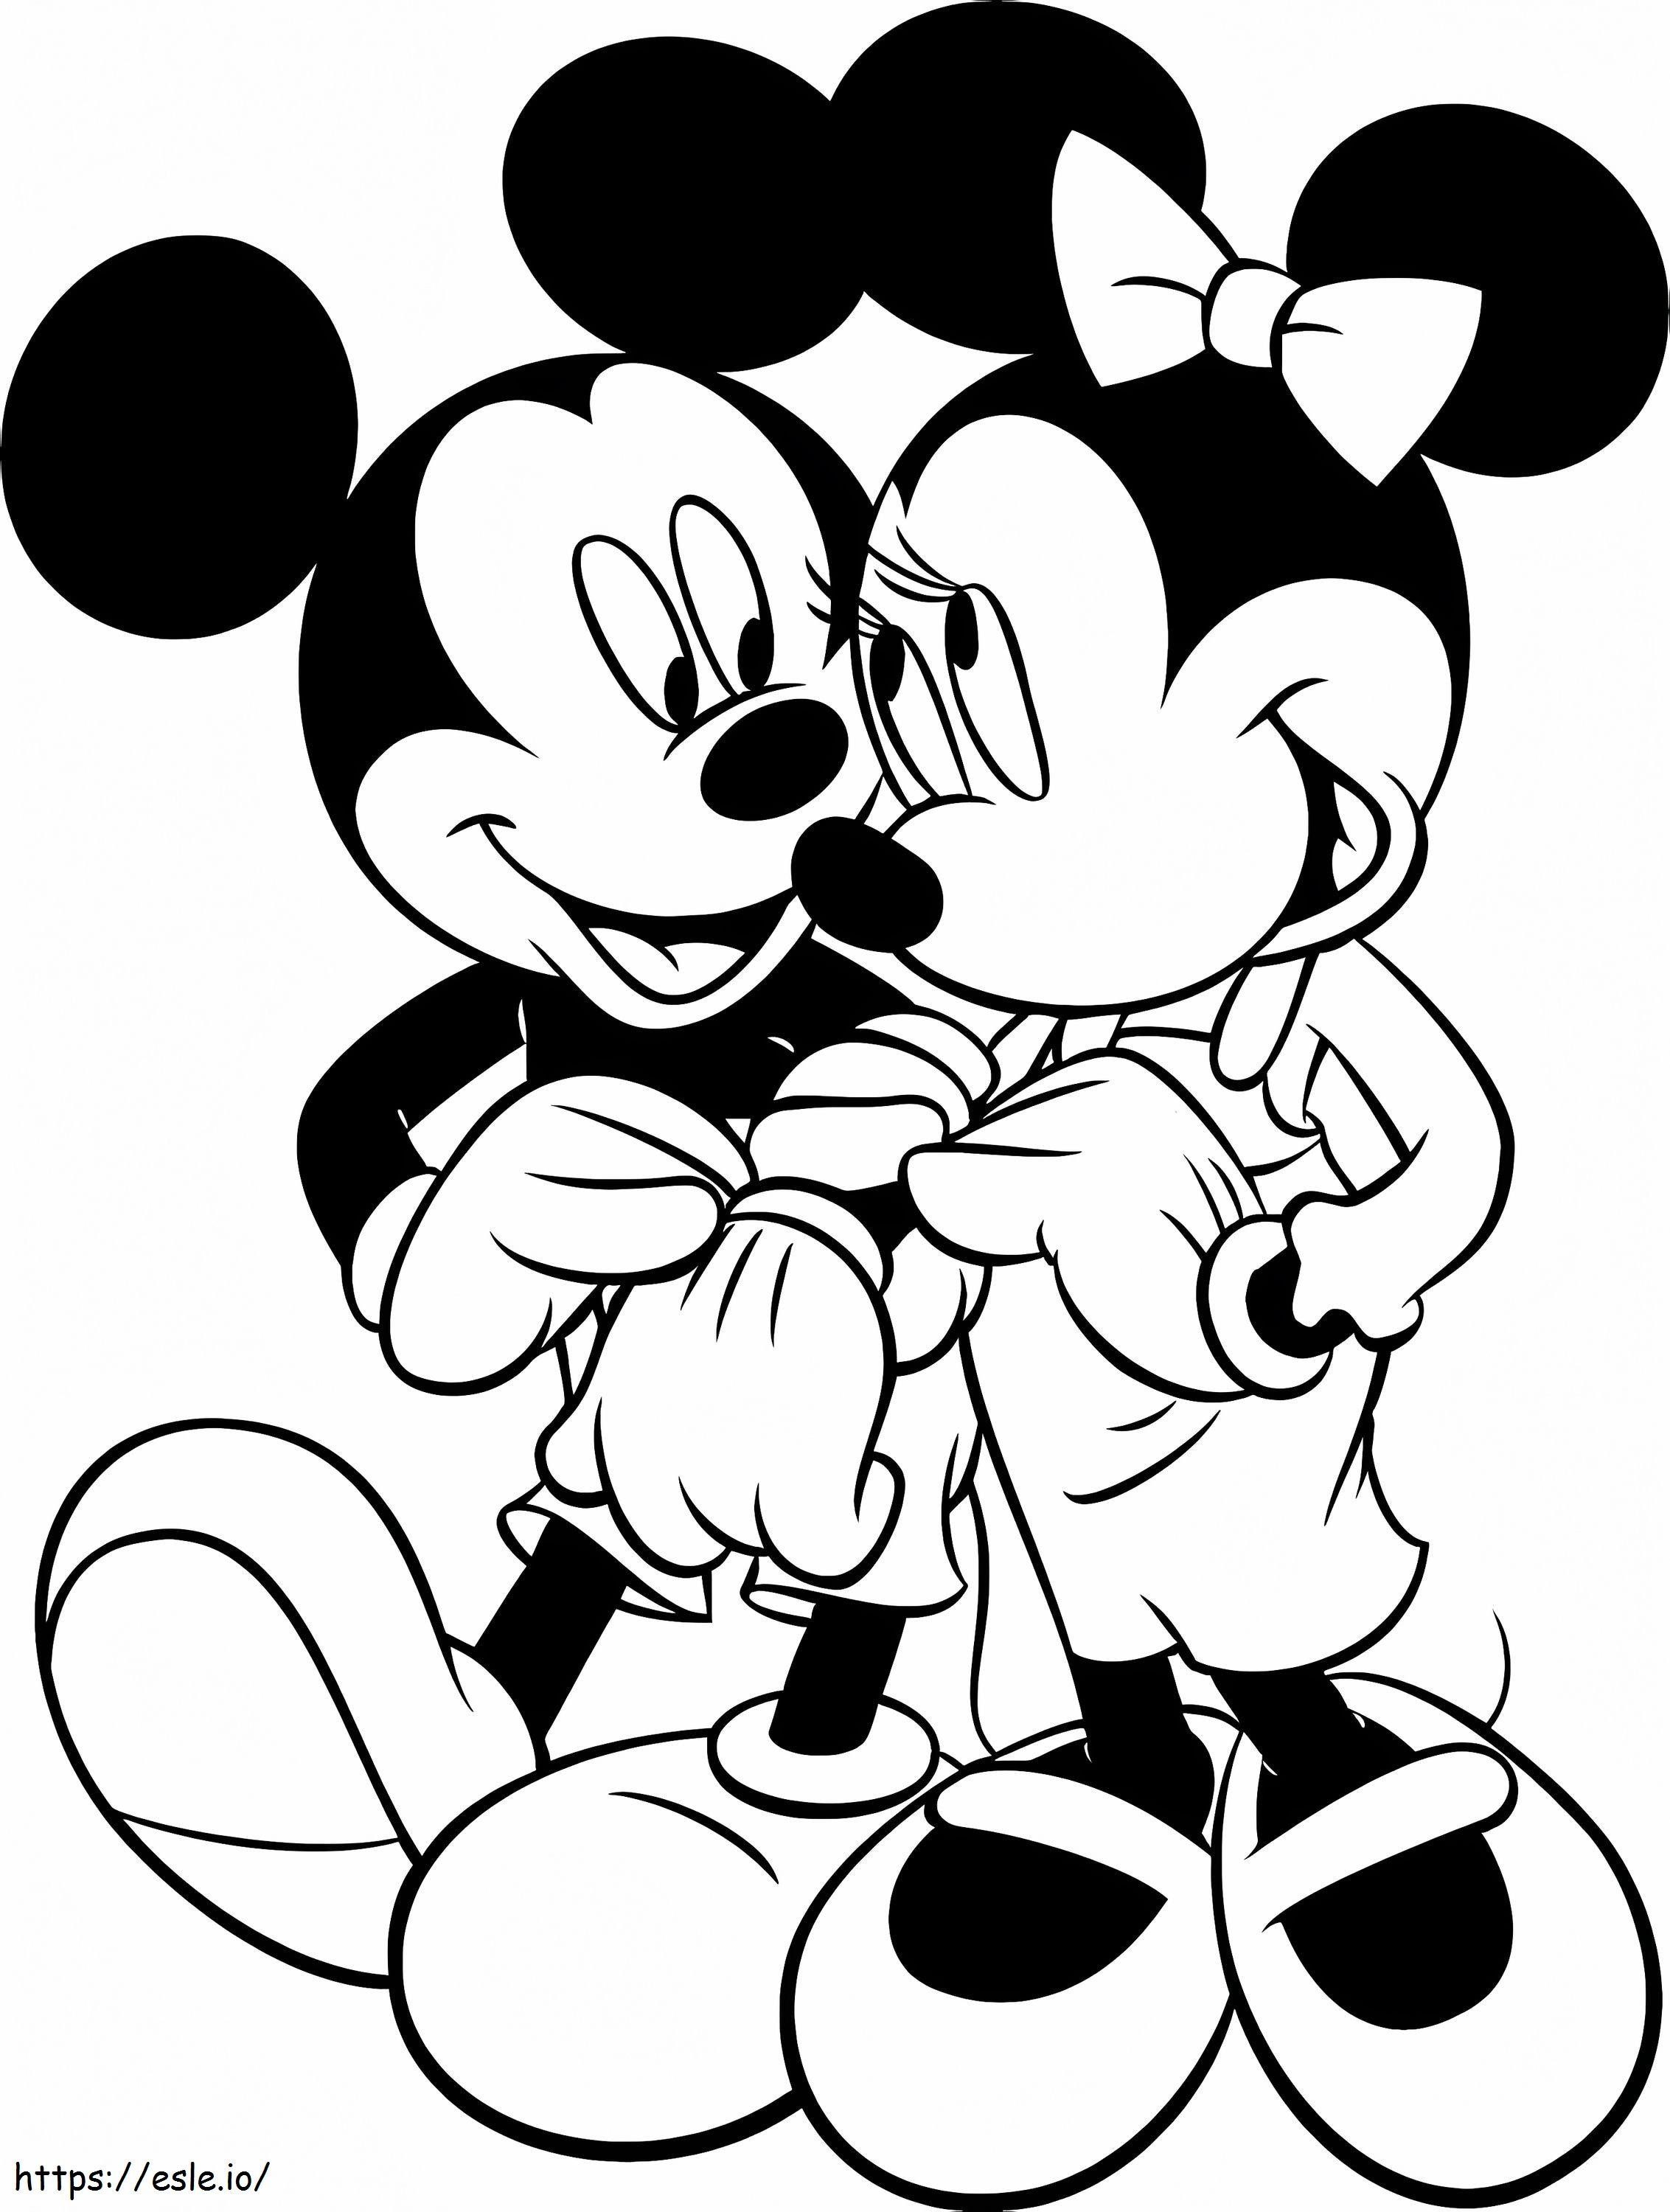 Mickey și Minnie Mouse Valentine de colorat